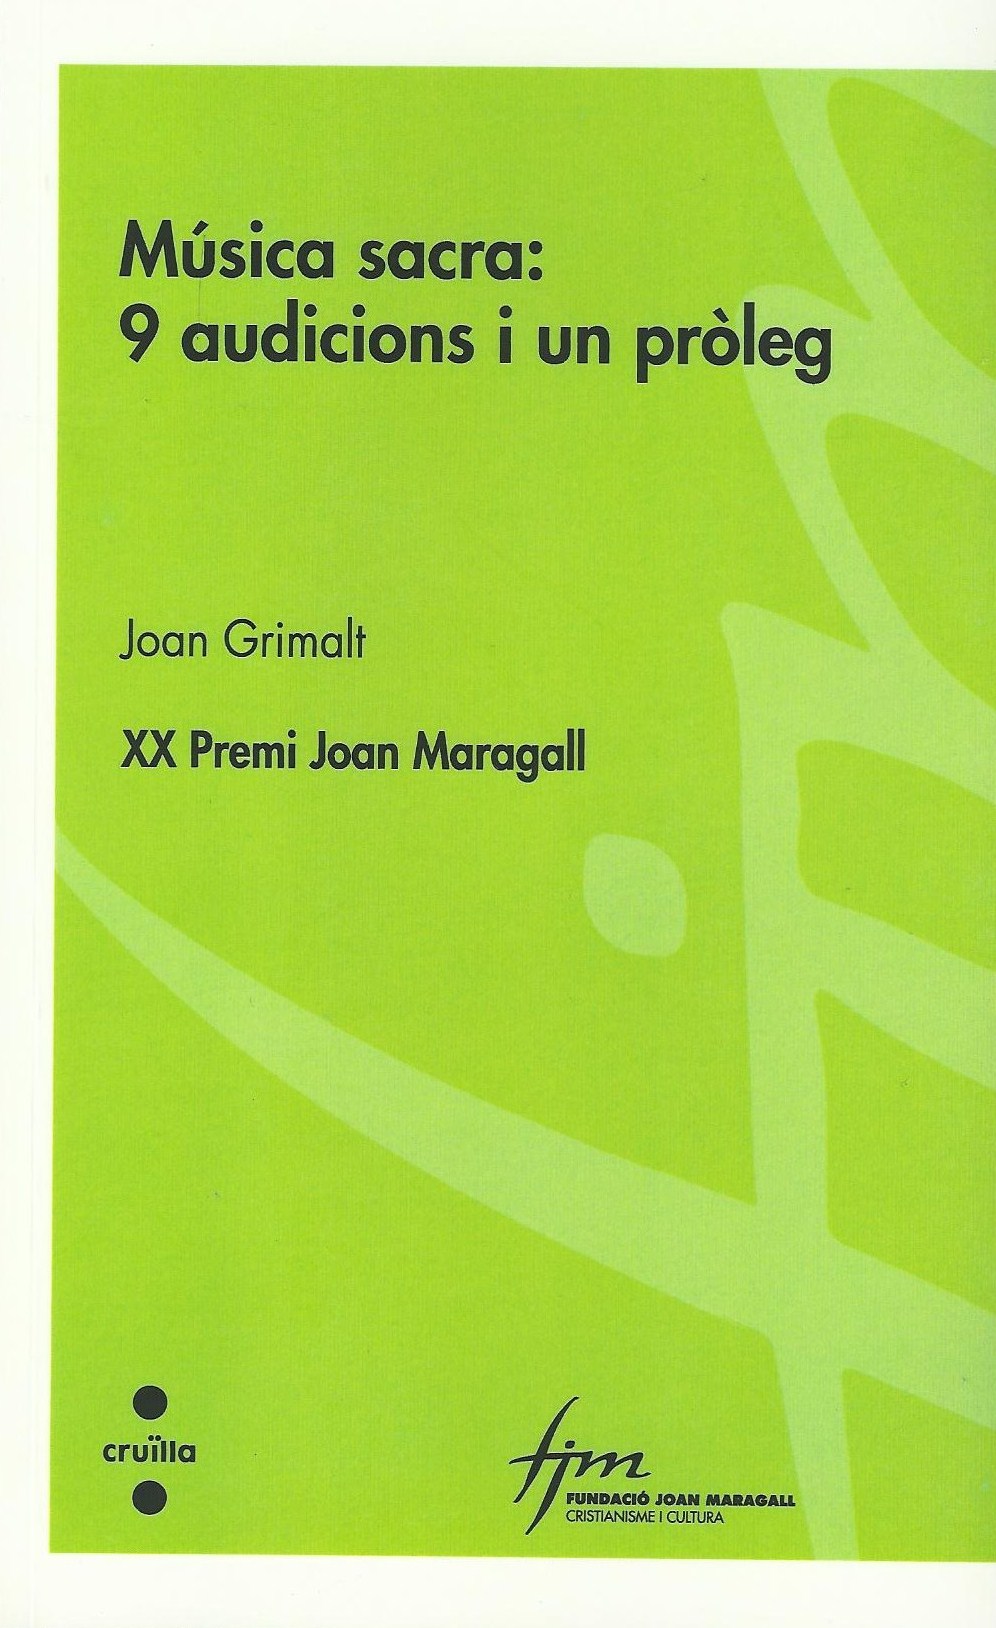 Musica sacra a la Fundació Joan Maragall